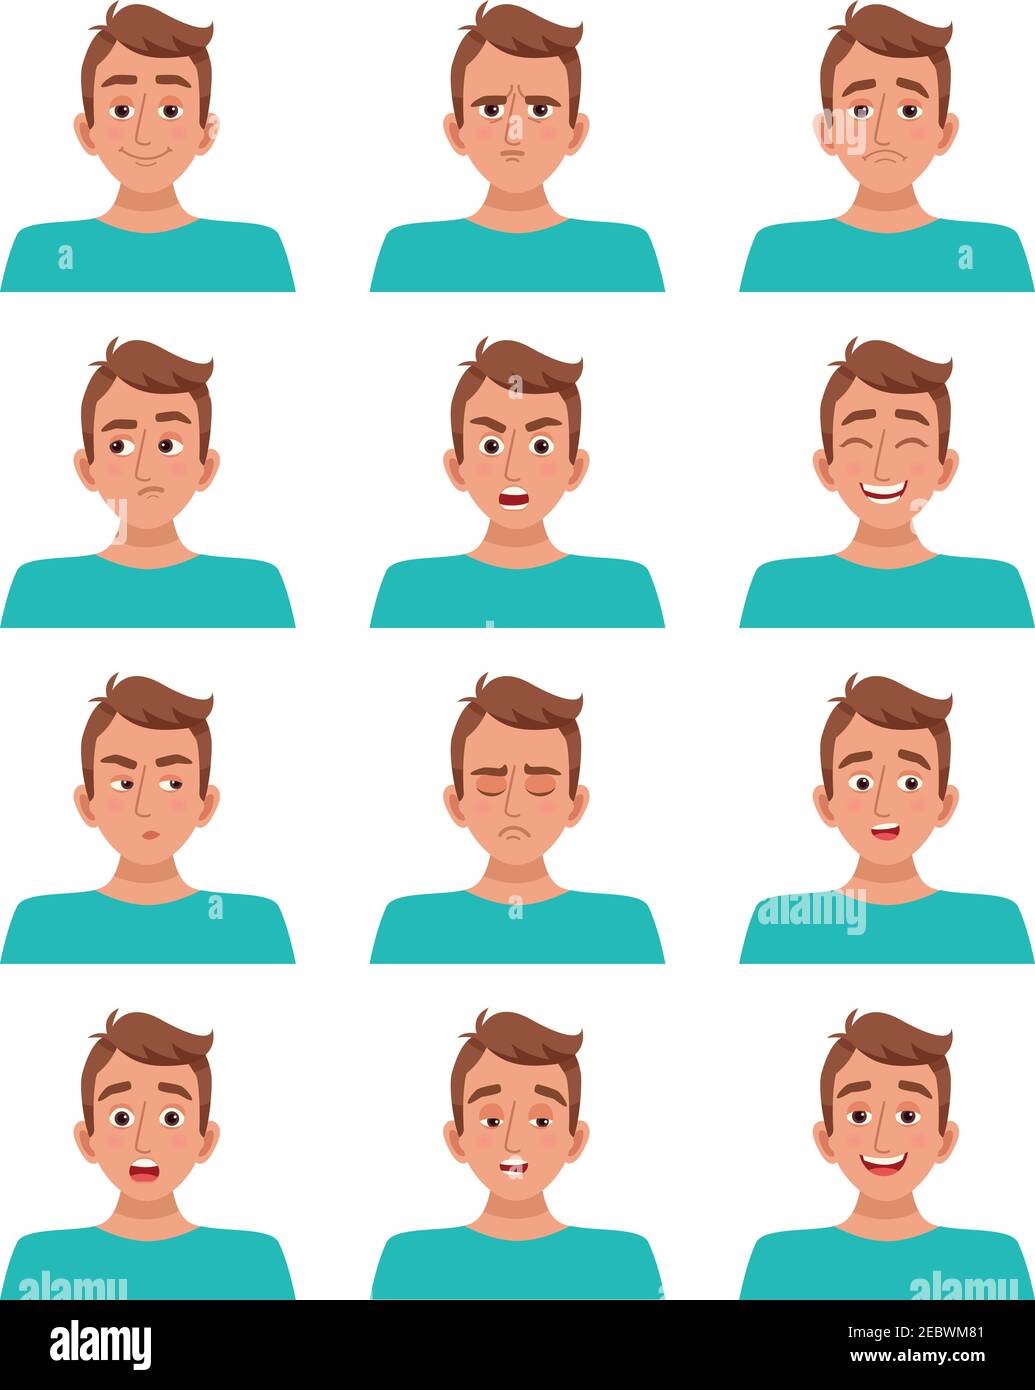 Avatar masculin personnage de dessin animé ensemble d'expressions faciales sourire rire colère peur tristesse bonheur surprise illustration vectorielle Illustration de Vecteur